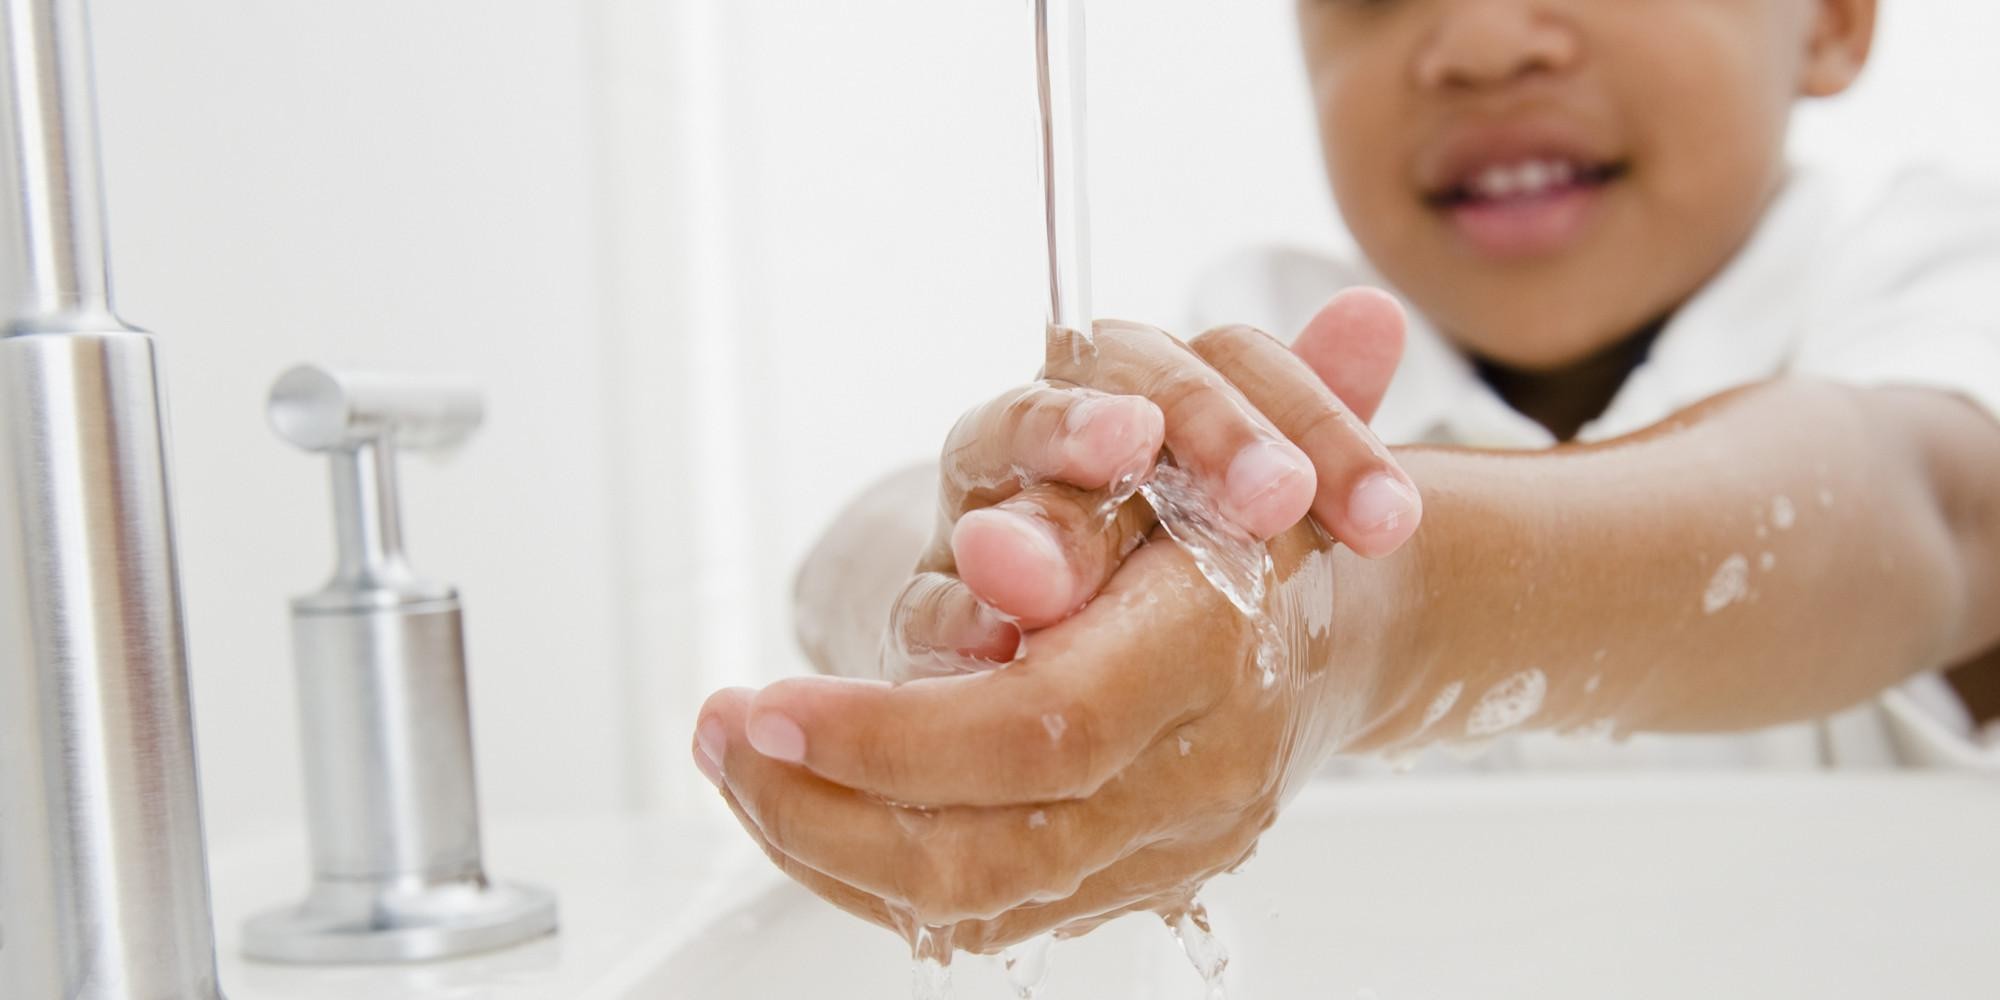 تفسير حلم غسل اليدين في المنام